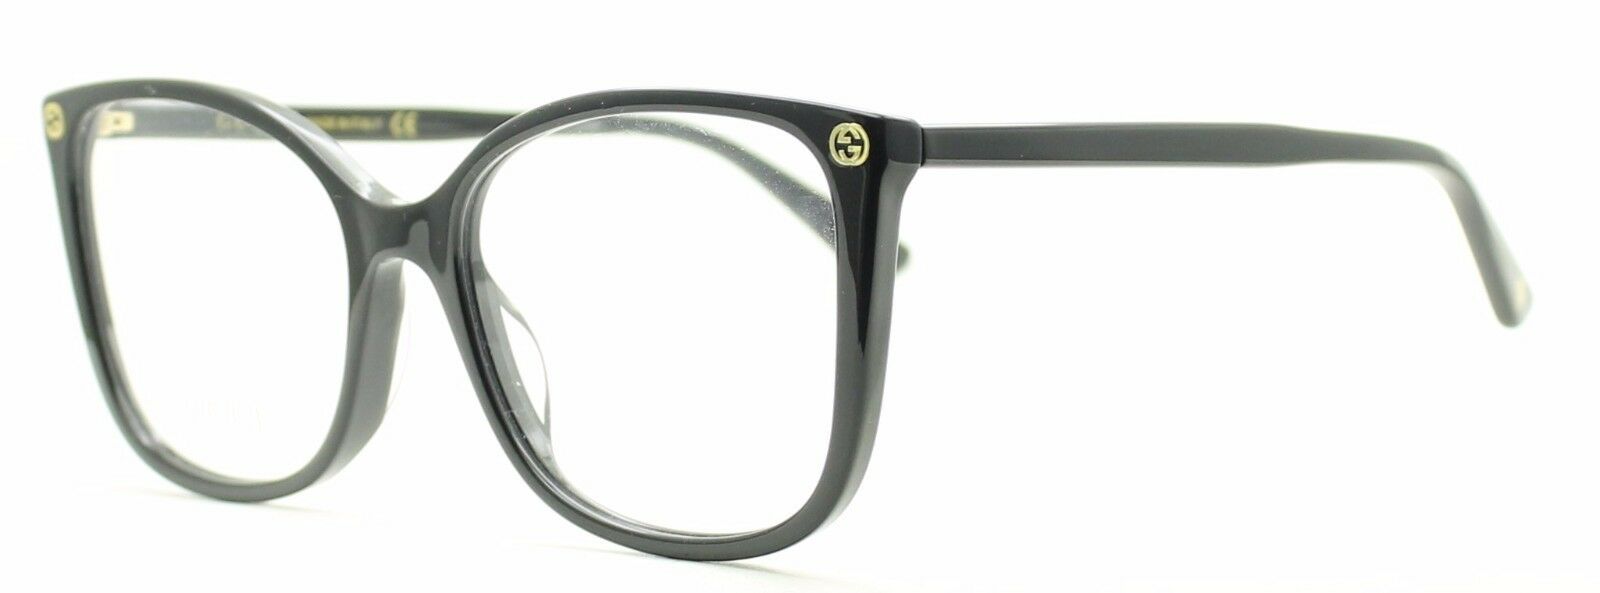 GUCCI GG 0026O 001 Eyewear FRAMES NEW Glasses RX Optical Eyeglasses ITALY - BNIB